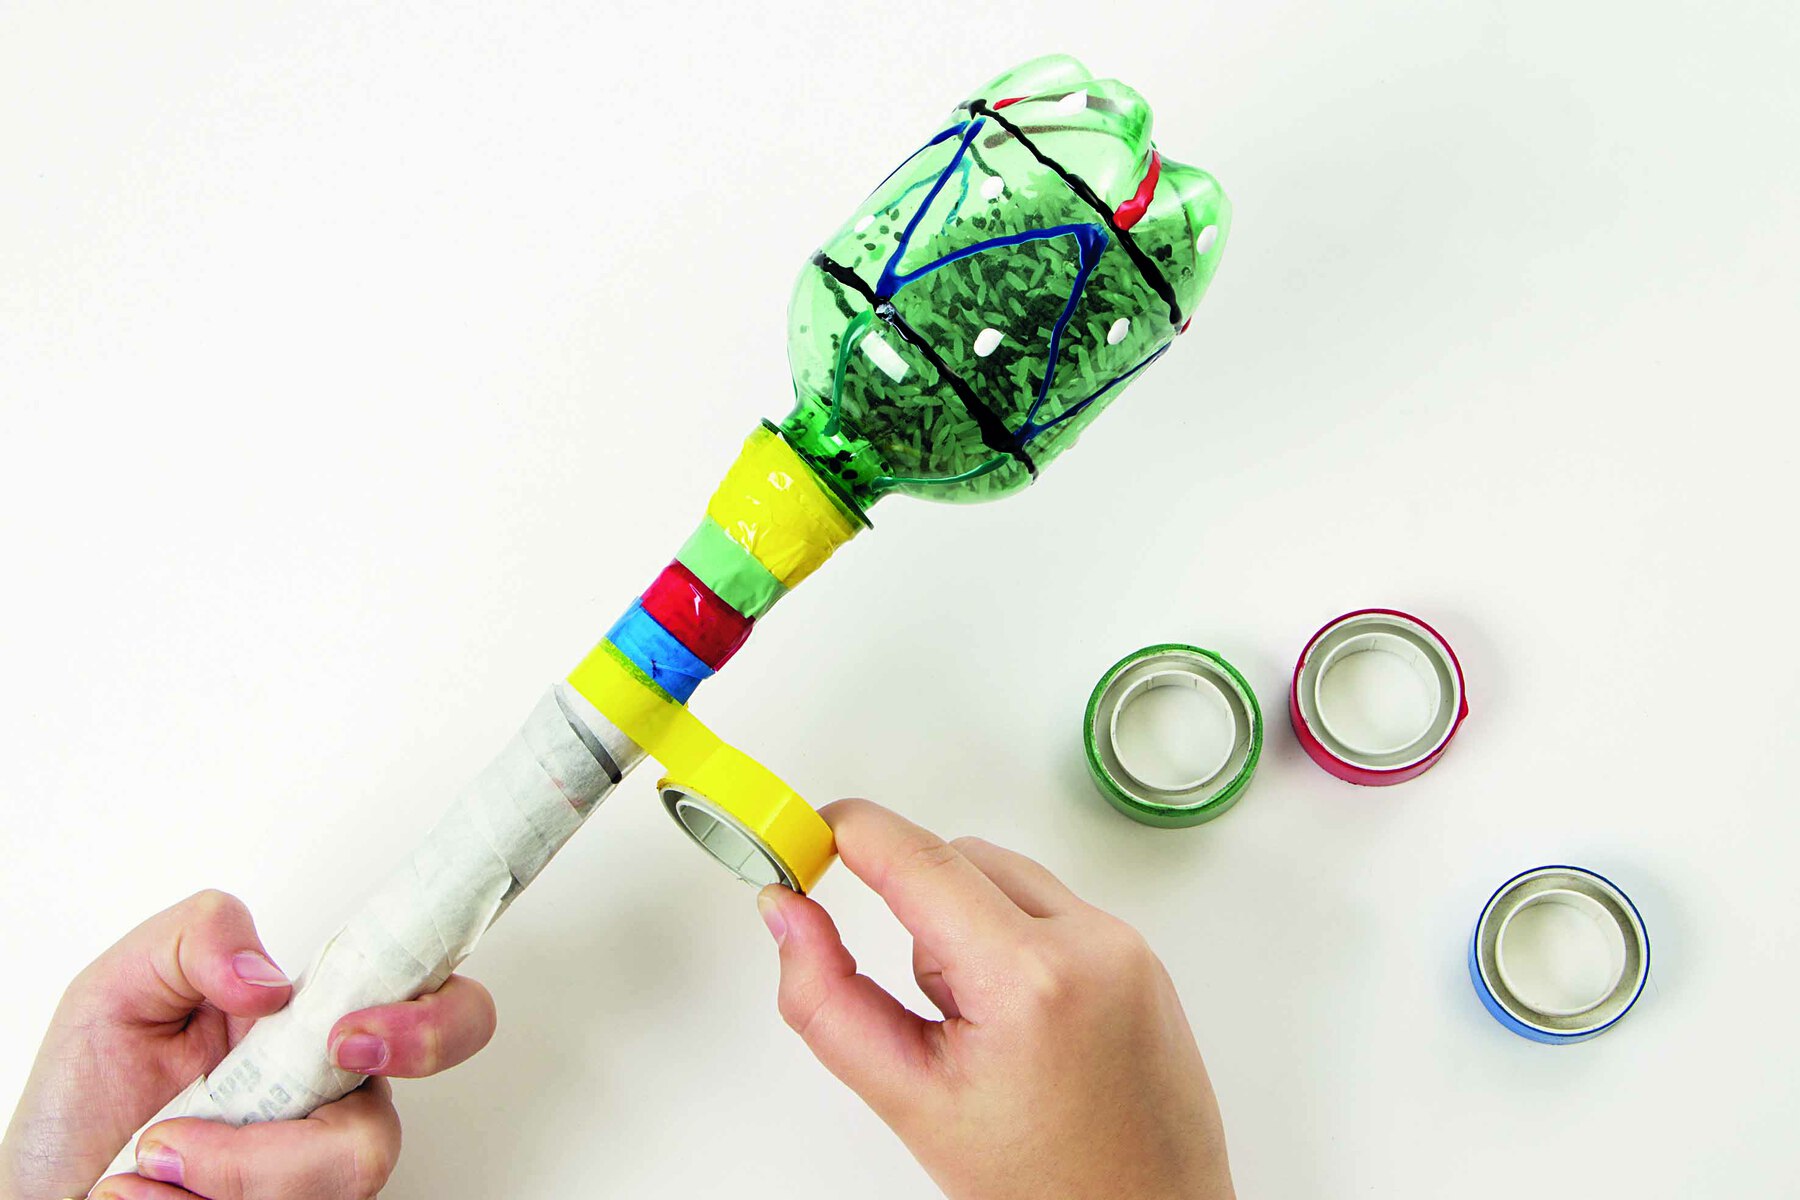 Fotografia. Destaque de mãos aplicando fitas adesivas coloridas na haste do instrumento musical construído com a garrafa PET.